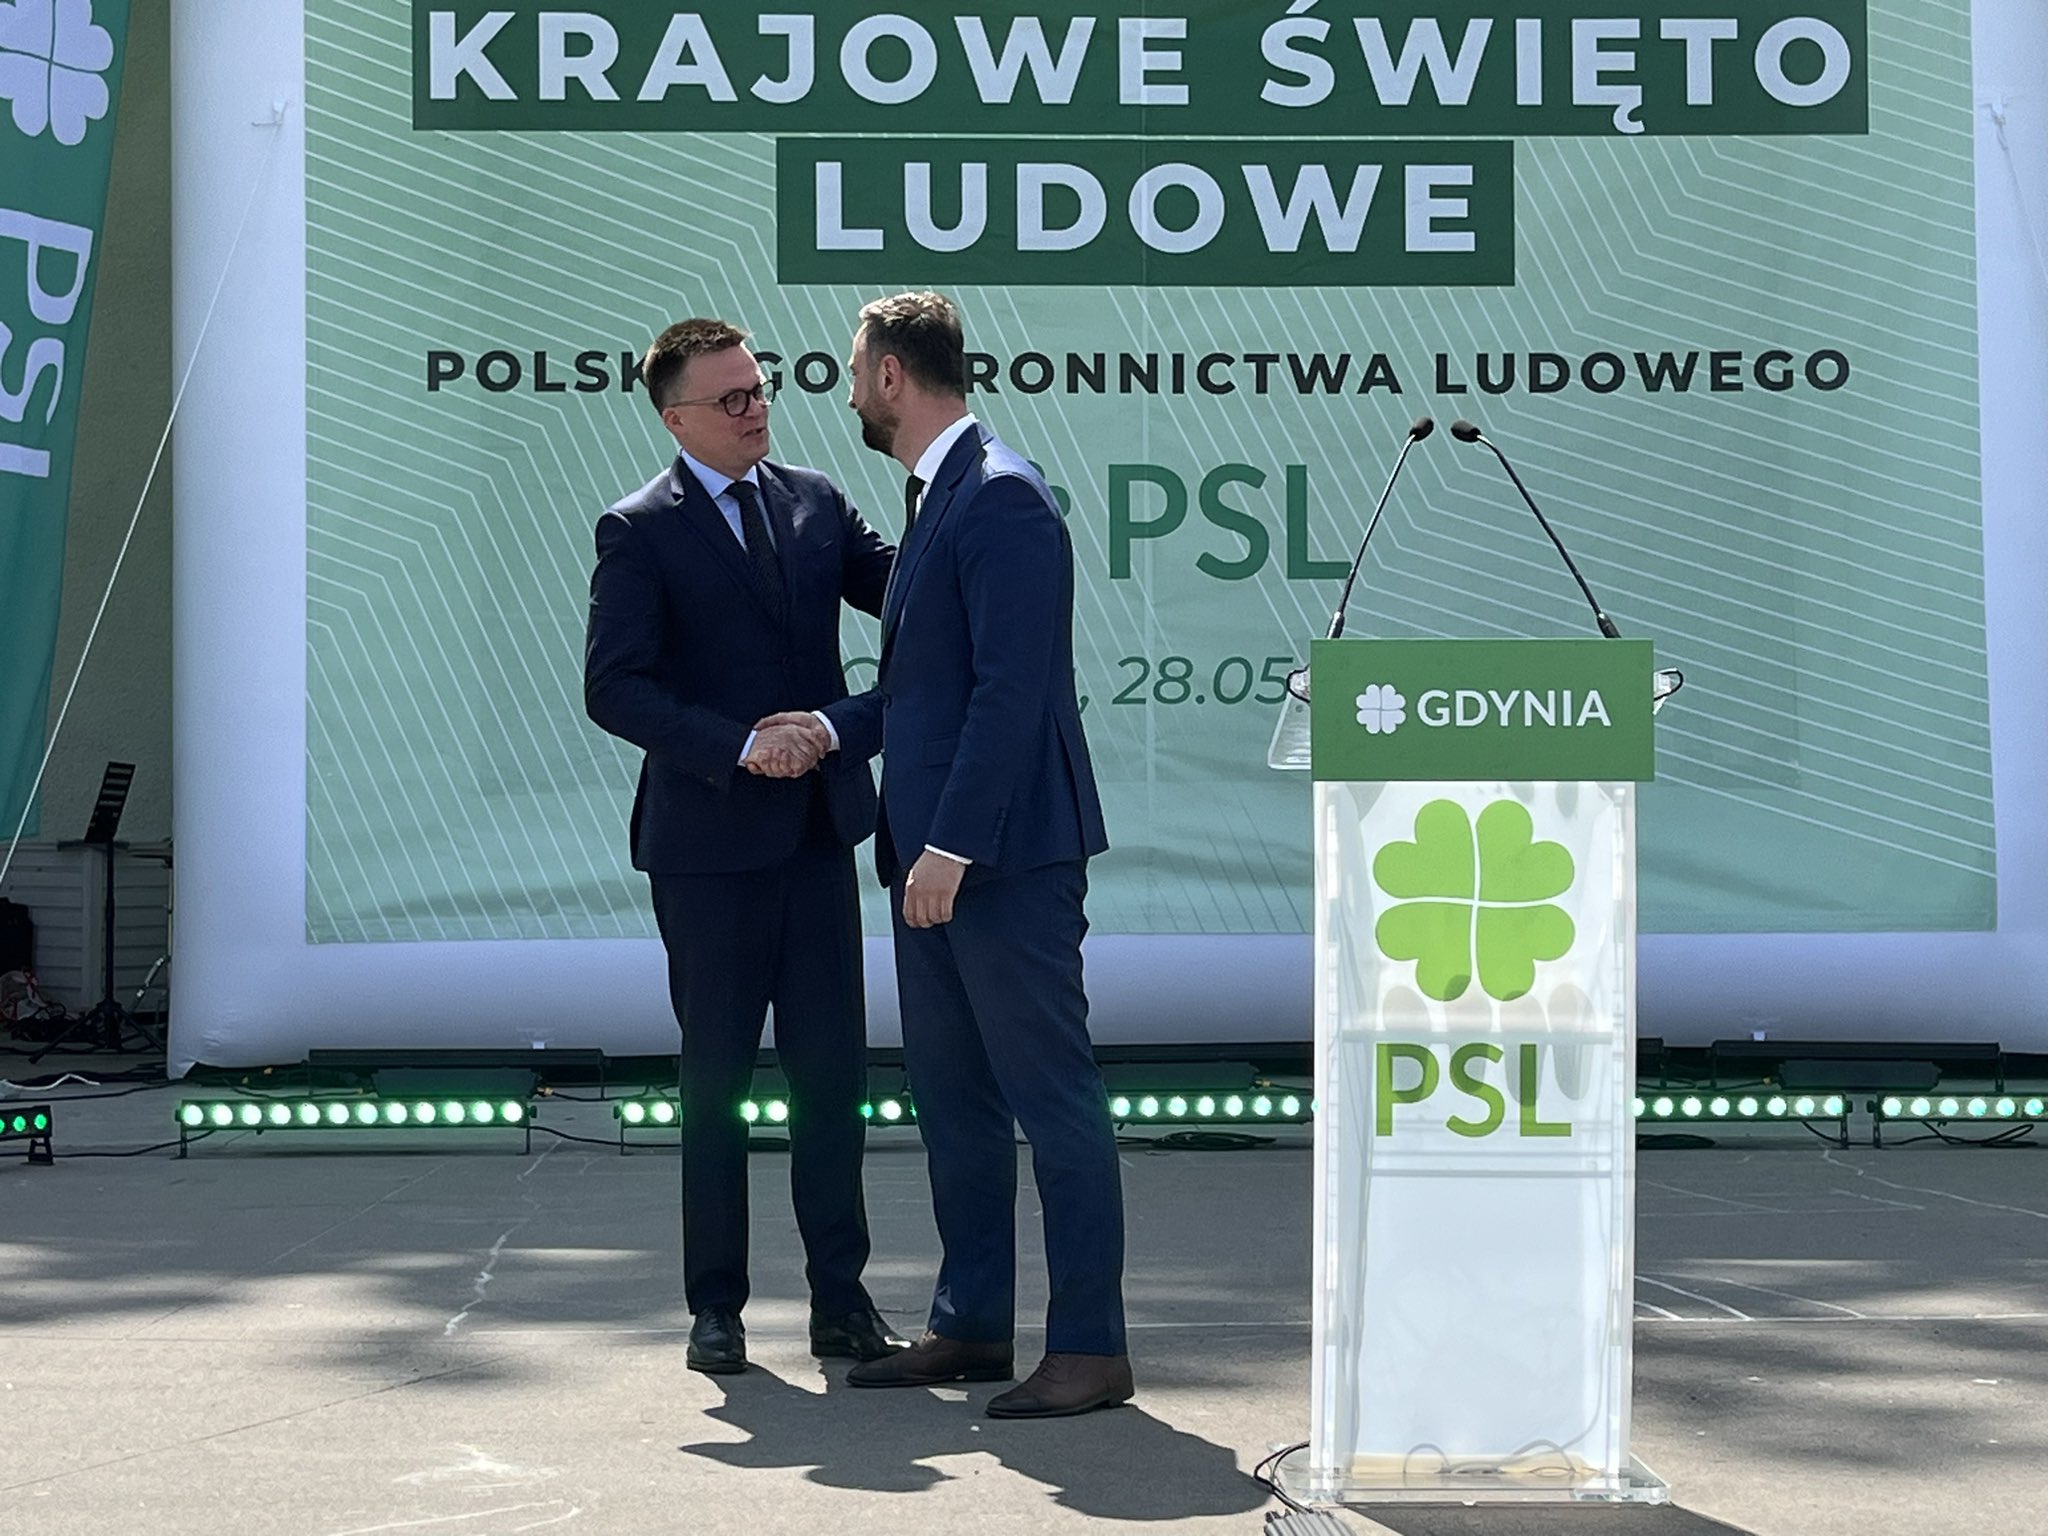 Krajowe Święto Ludowe w Gdyni, Władysław Kosiniak-Kamysz, Szymon Hołownia